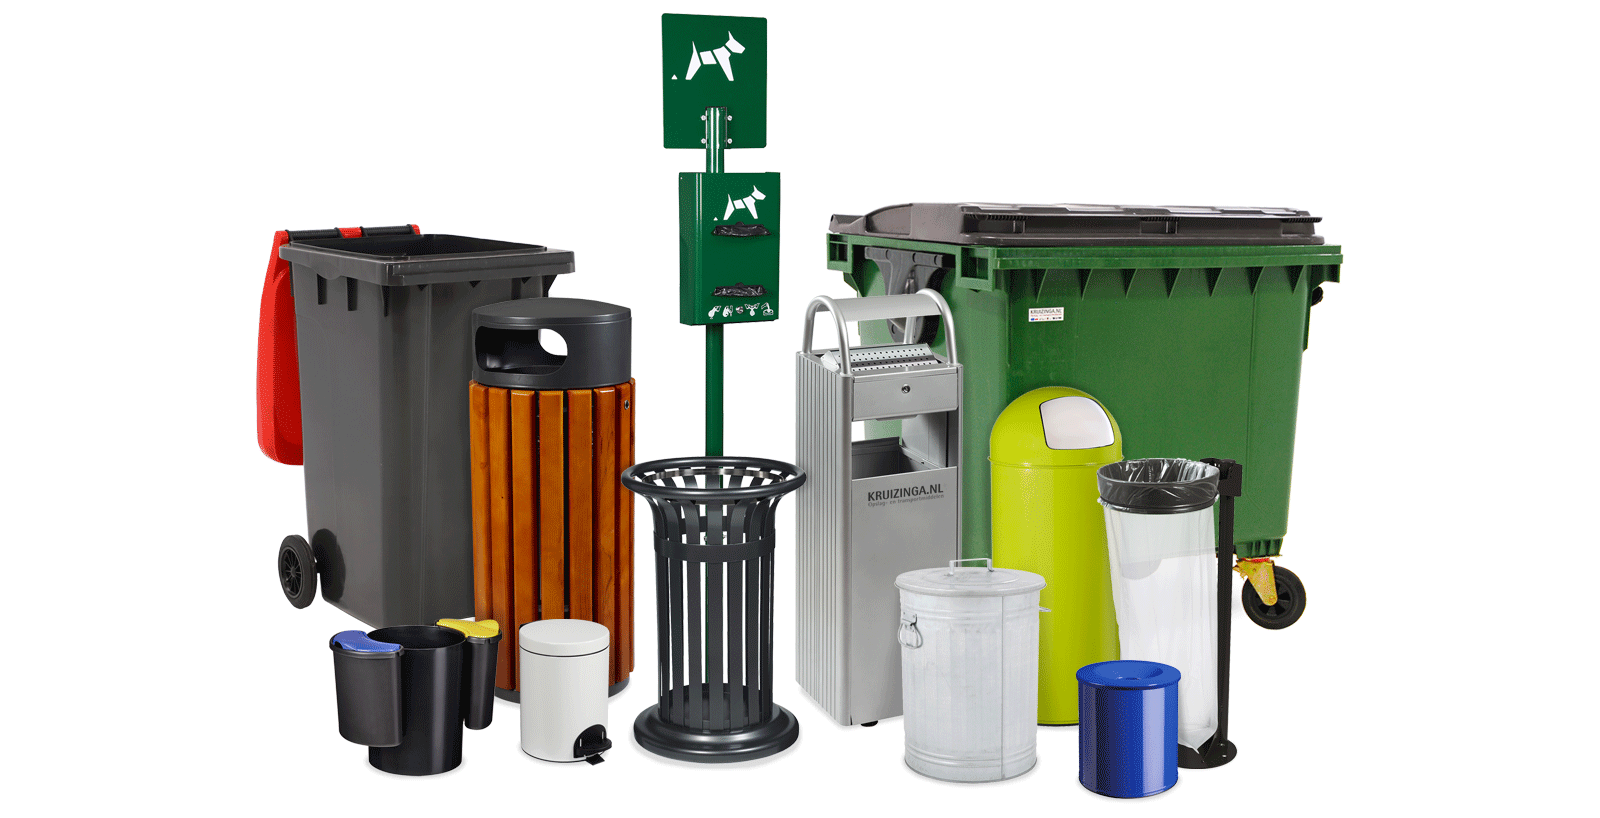 Bekijk ons grote assortiment afvalbakken, afvalcontainers en reinigingsproducten bij Kruizinga